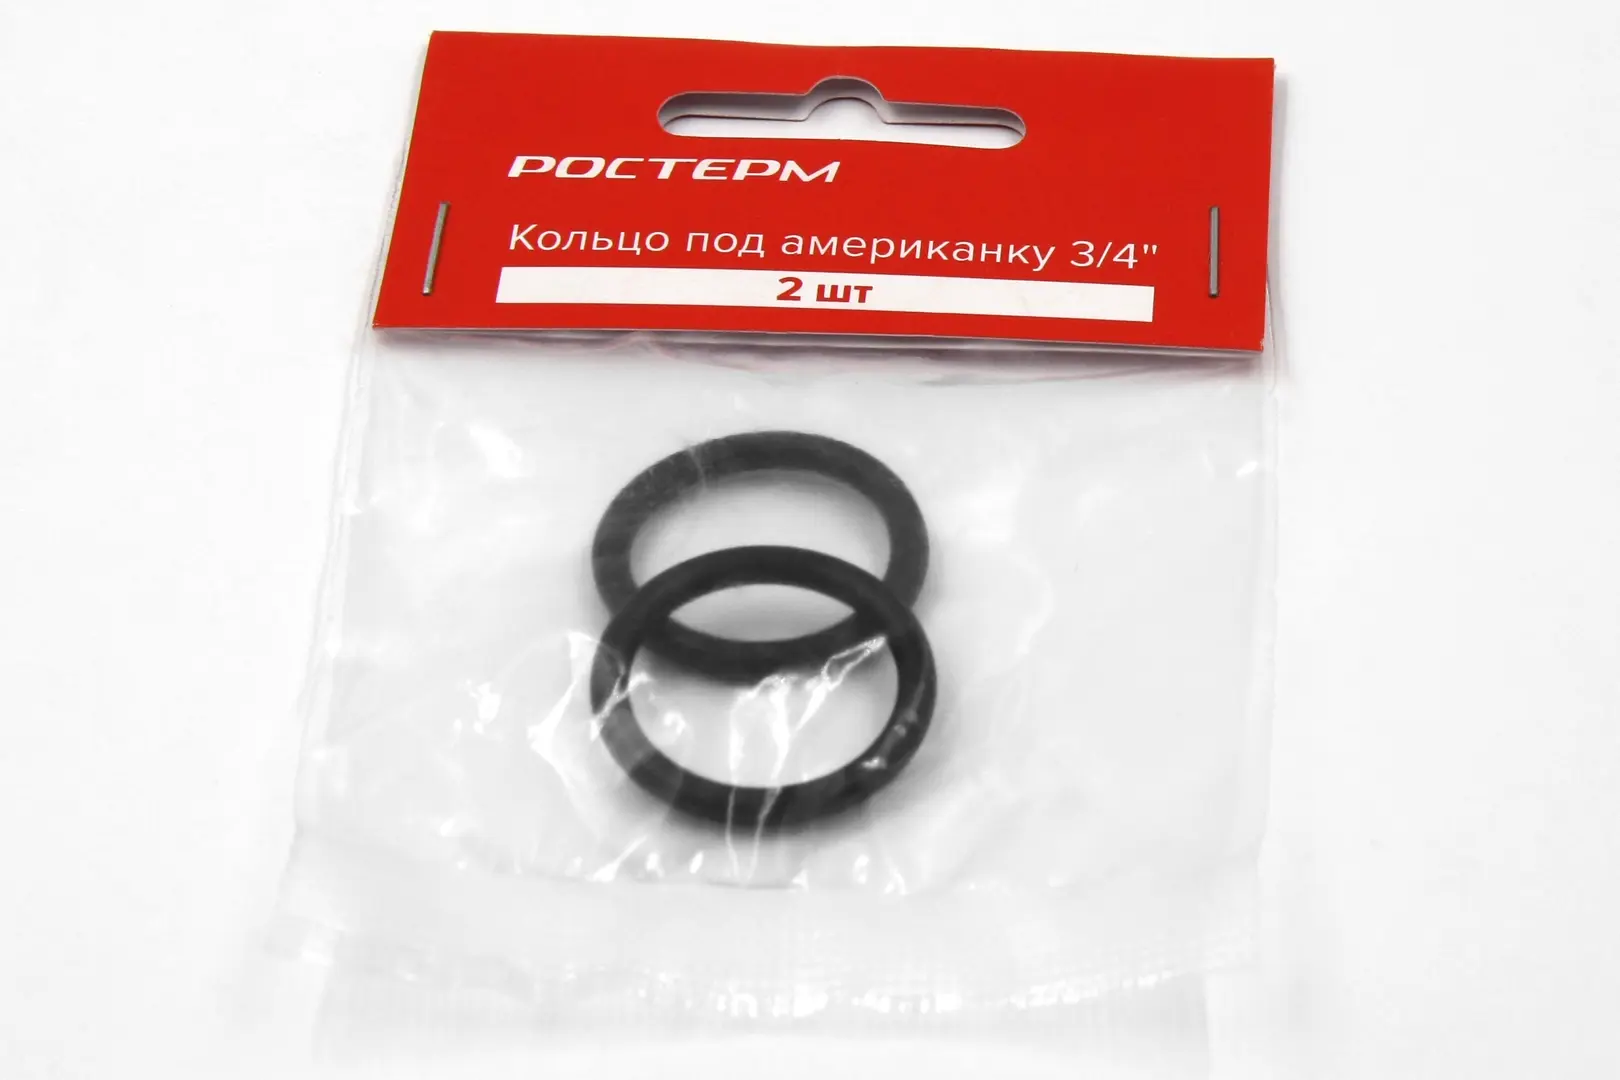 Кольцо под американку Ростерм 20 мм 2 штуки цвет чёрный ключница на молнии длина 13 см металлическое кольцо цвет чёрный